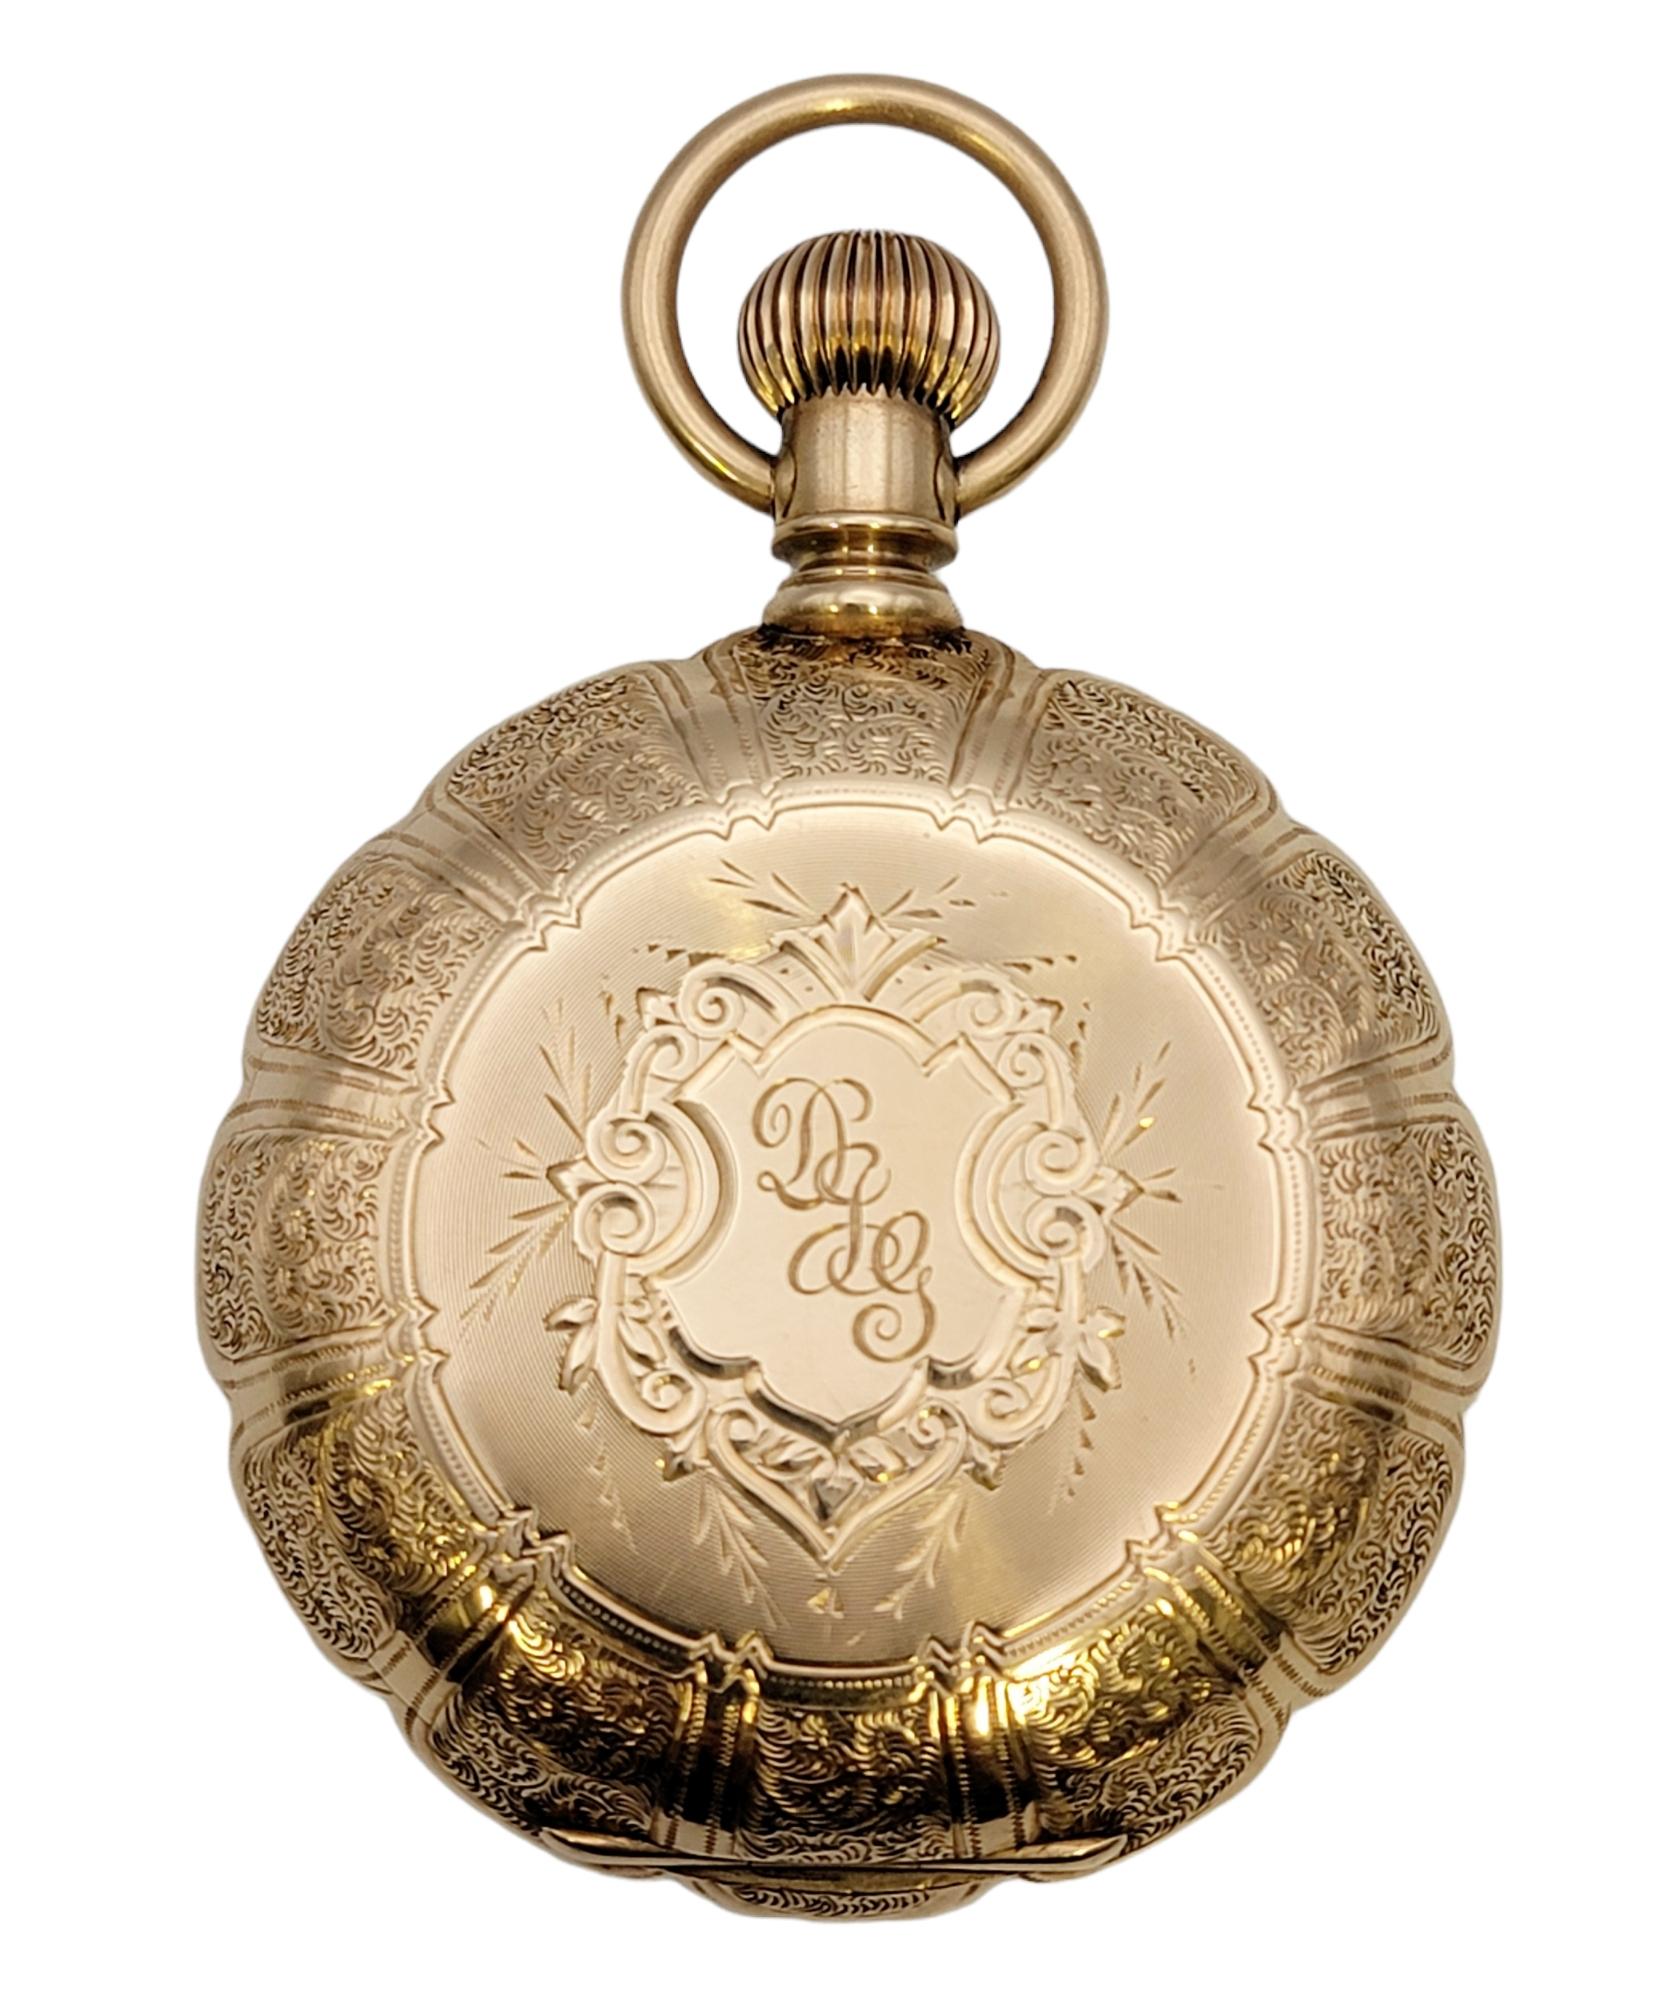 Cette rare montre de poche vintage en or jaune 14 carats de Waltham est une pièce d'histoire étonnante. Cette montre de luxe en or massif est fabriquée avec des détails d'une finesse exquise. Whiting présente un boîtier de 46 mm avec un cadran rond